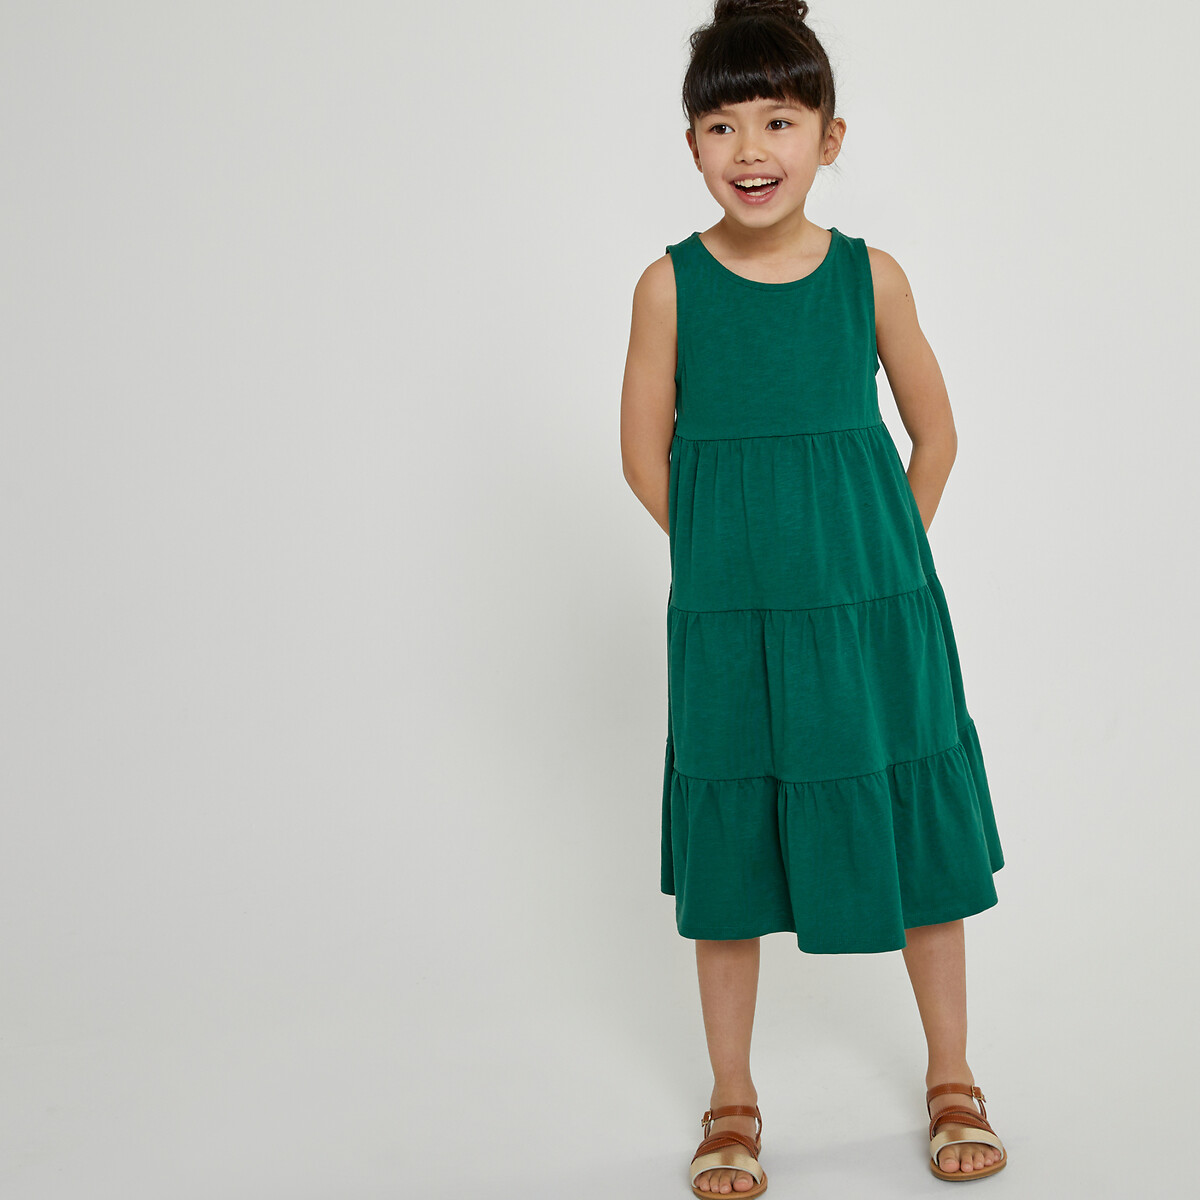 Платье без рукавов 3 года - 94 см зеленый джоггеры 3 14 лет 3 года 94 см зеленый